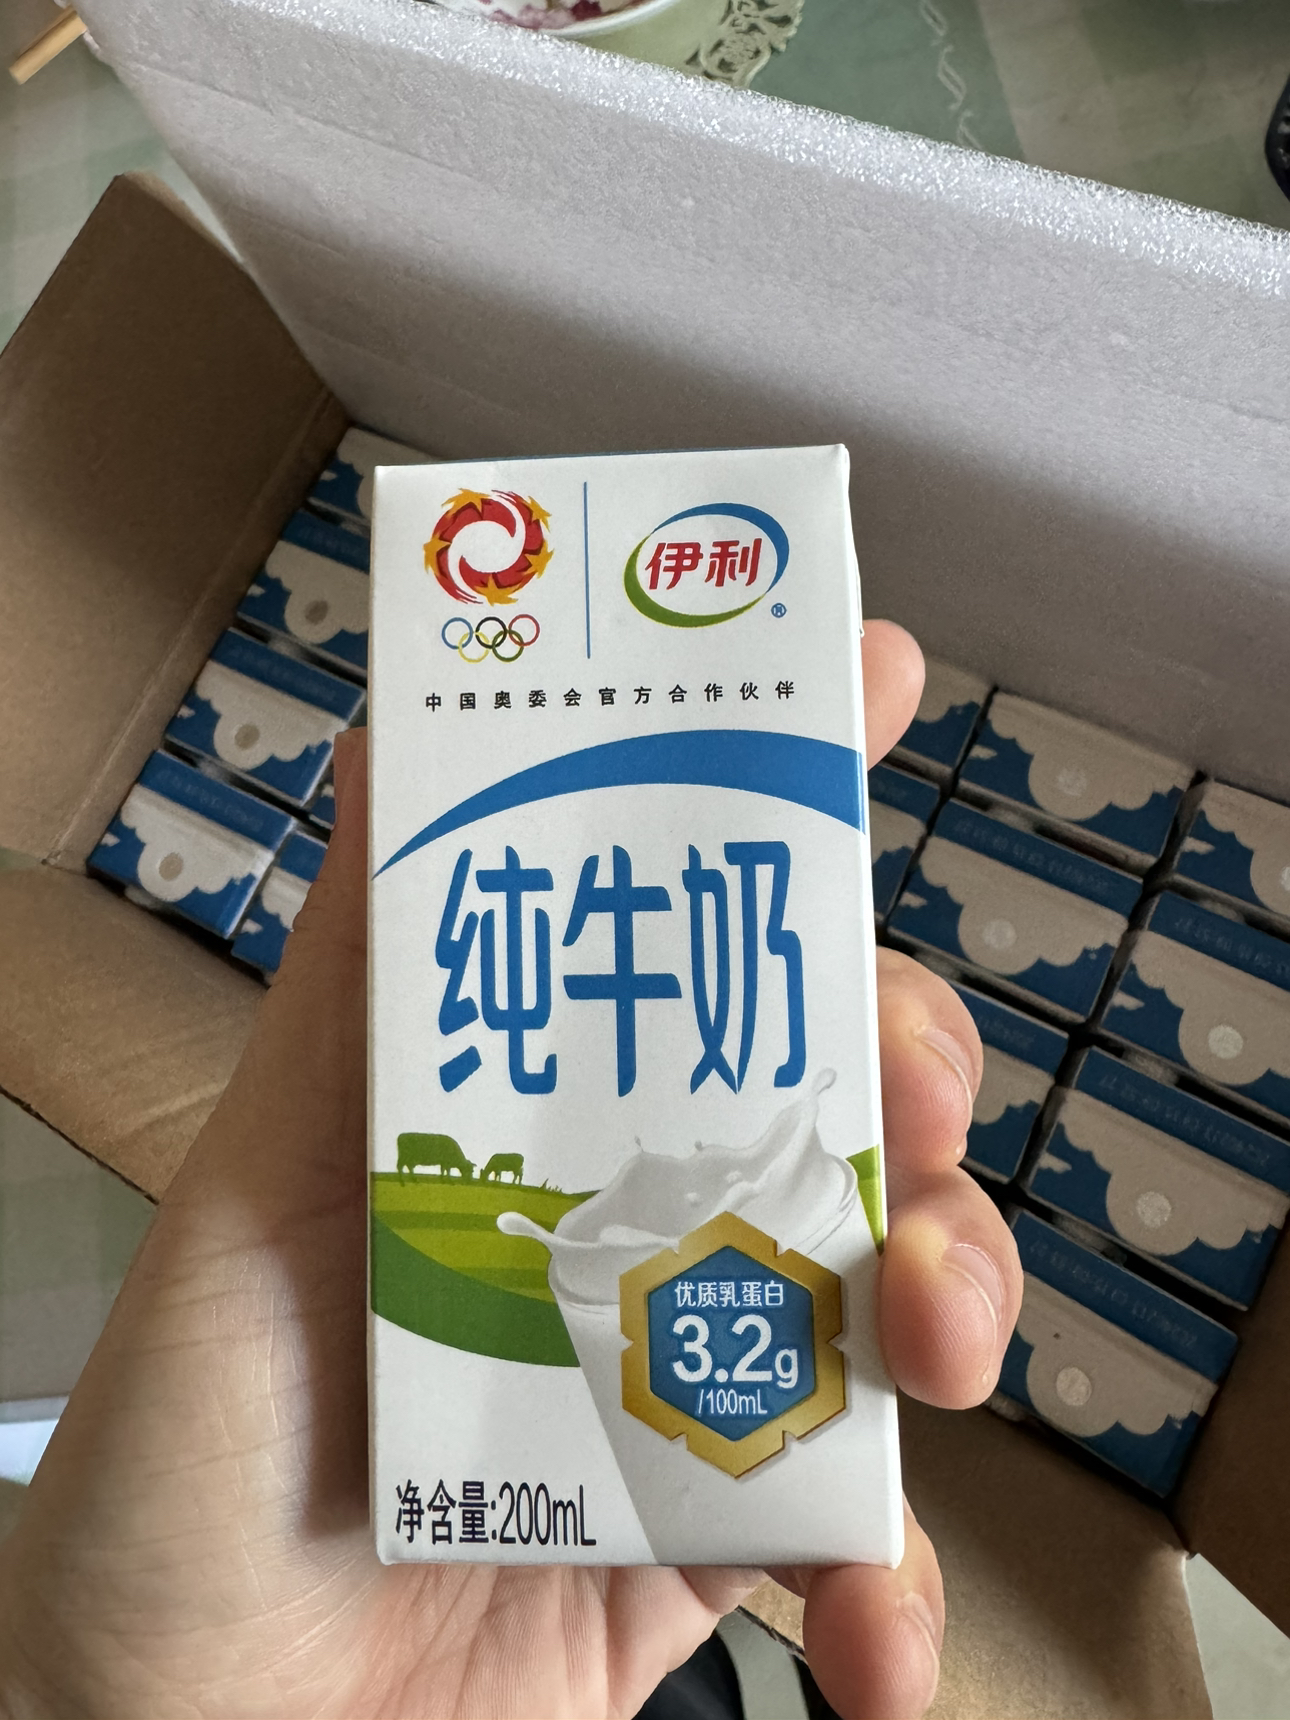 [纯牛奶24盒] 伊利纯牛奶24盒*200ml整箱 品牌直营 早餐营养牛奶晒单图